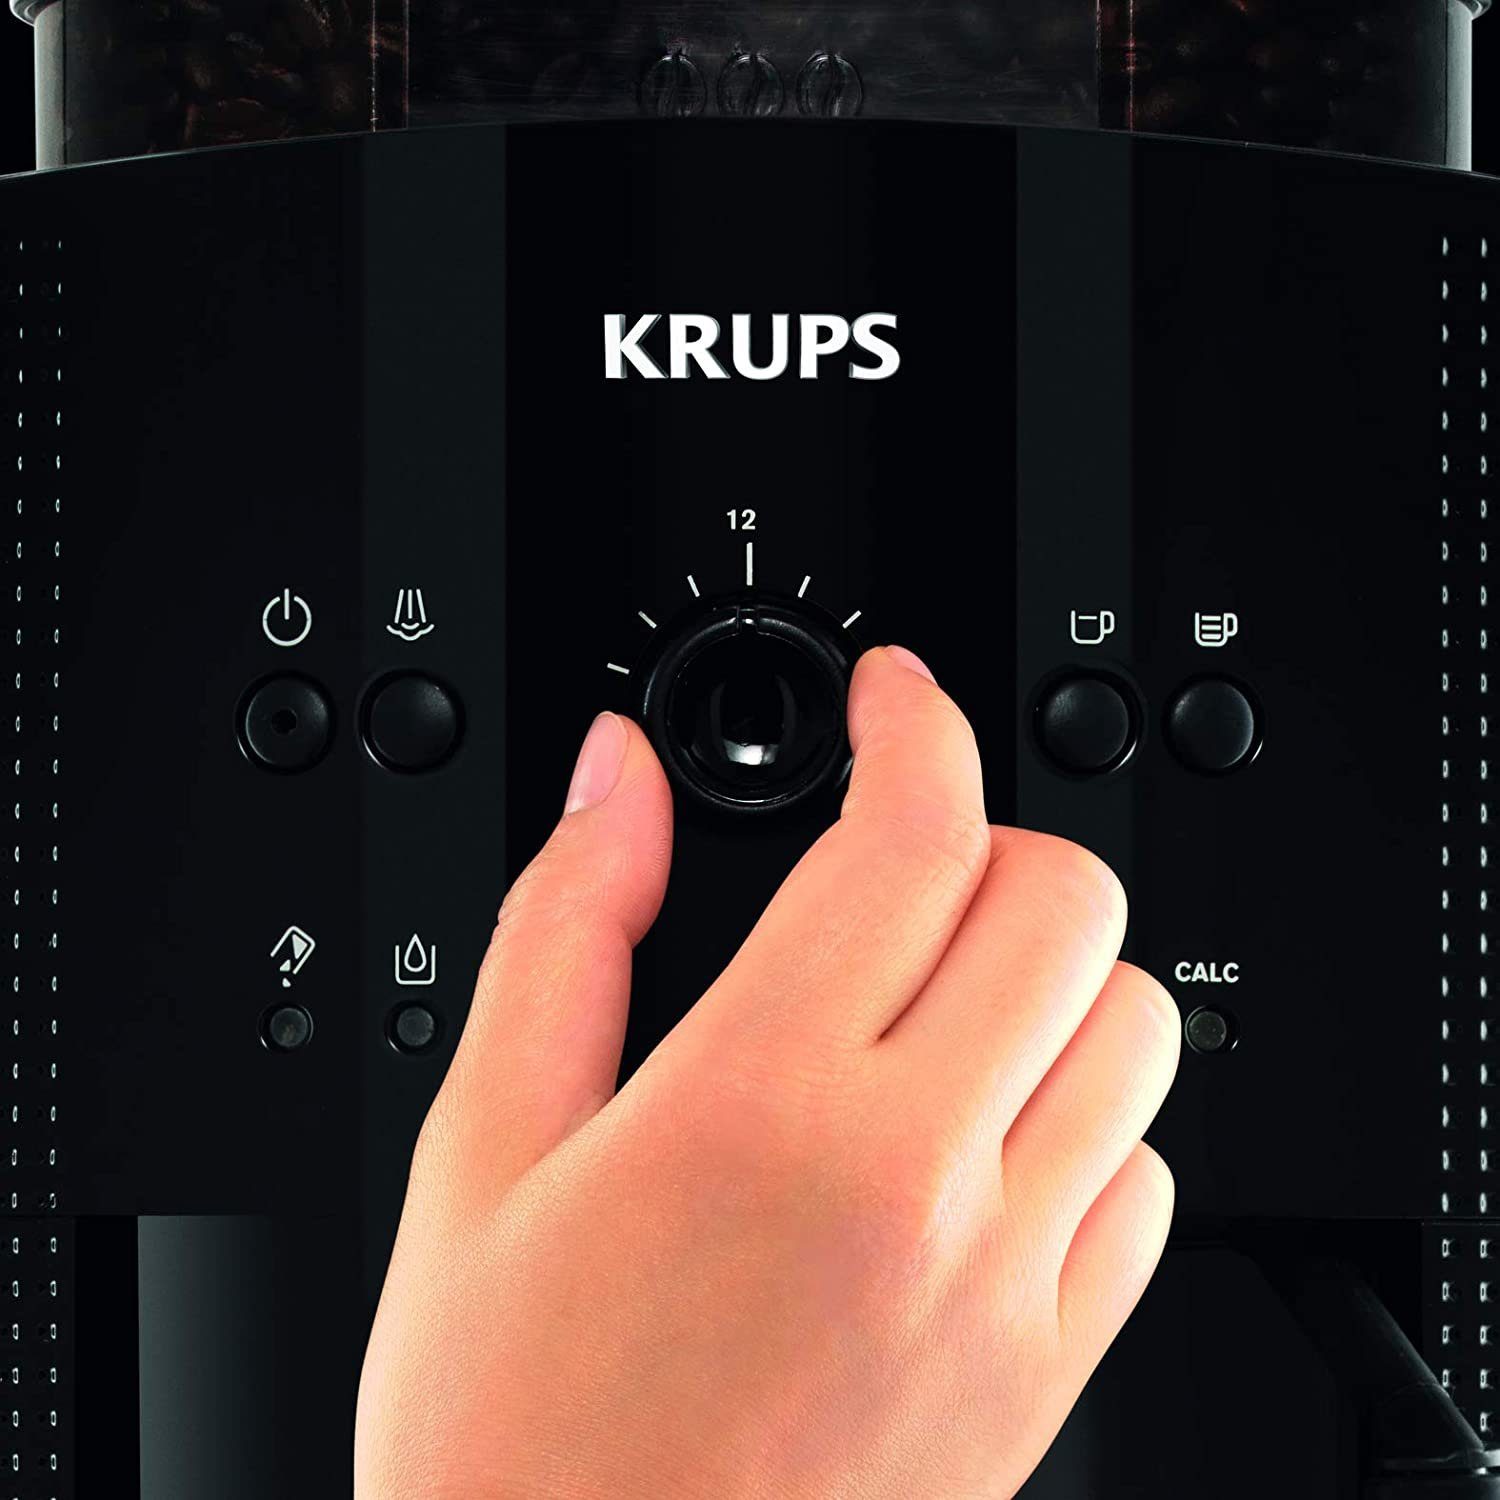 2-Tassen-Funktion, Kaffeevollautomat, Kaffeevollautomat CappucinoPlus-Düse 1,8 EA Krups 81R8 W, l Milchsystem 1450 Espressomaschine, Wassertank, Arabica mit